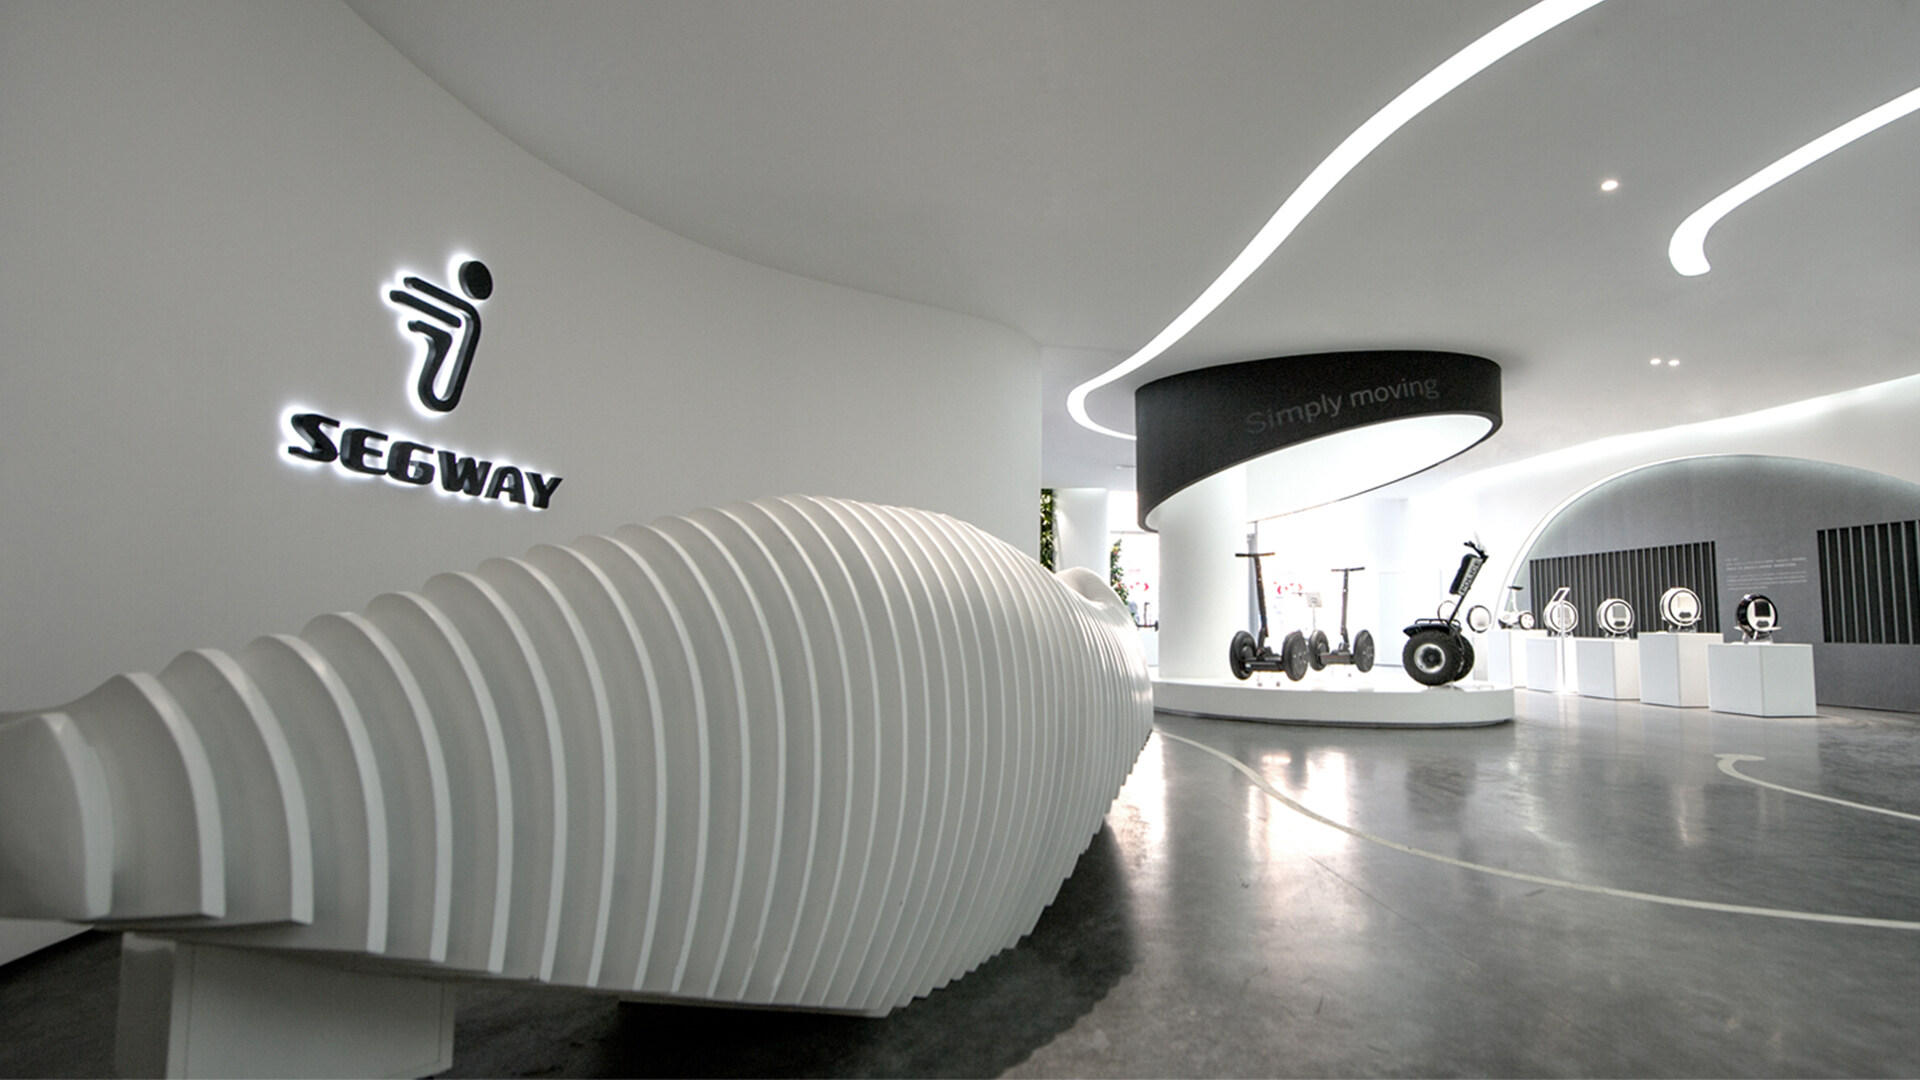 电动代步车的造型设计-赛格威 Segway 品牌视觉体系打造